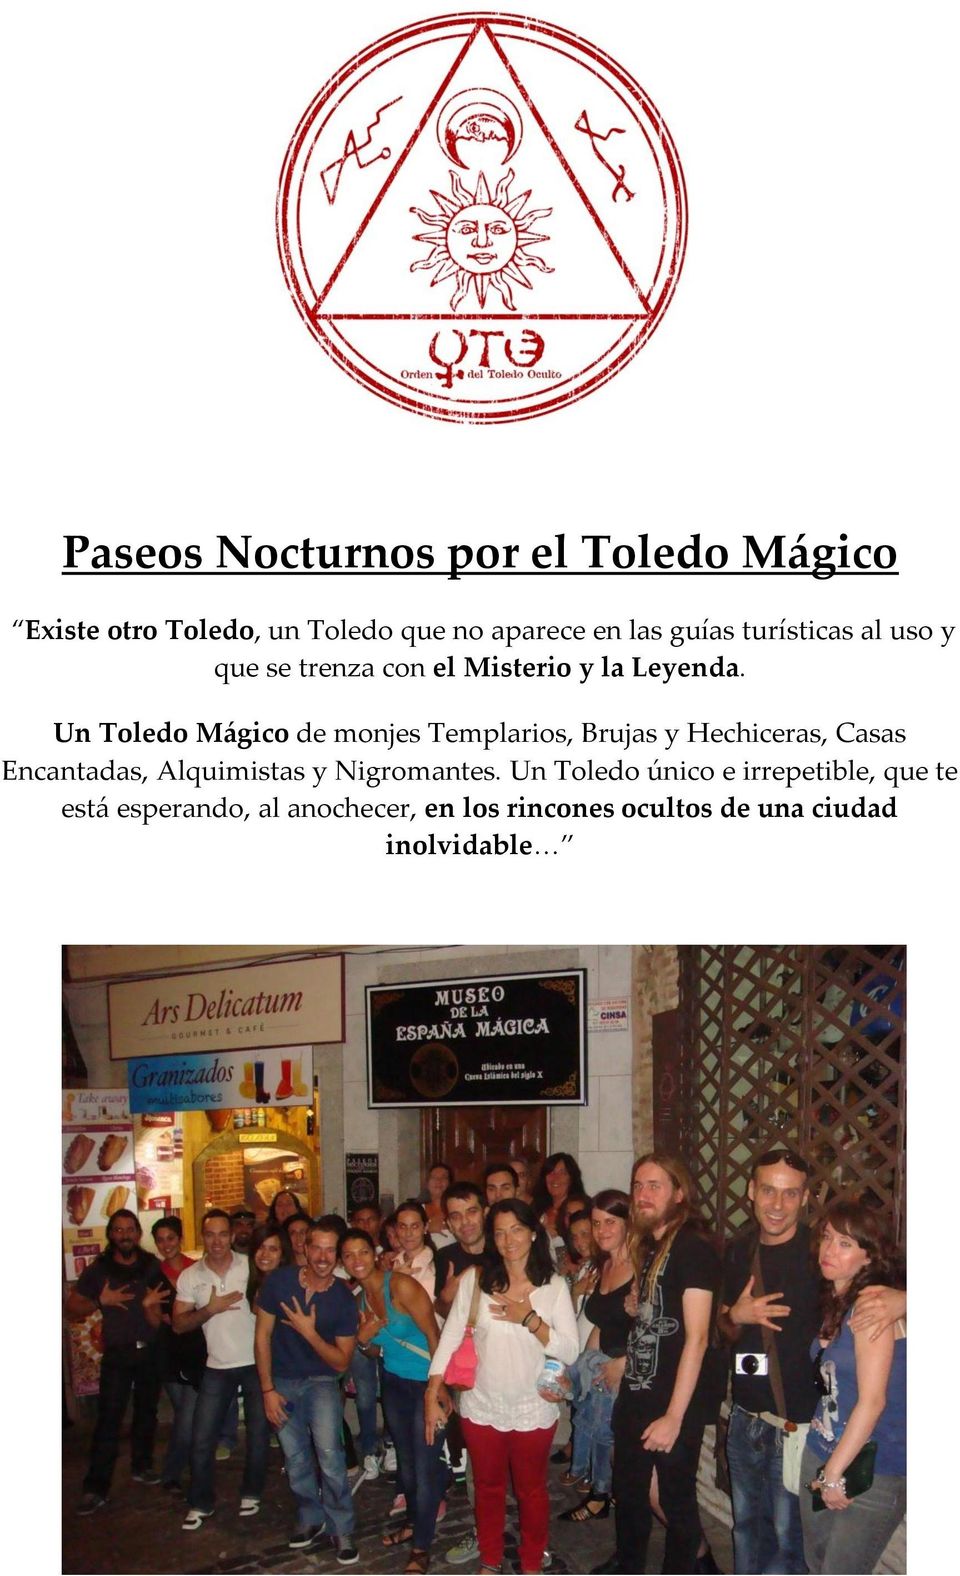 Un Toledo Mágico de monjes Templarios, Brujas y Hechiceras, Casas Encantadas, Alquimistas y